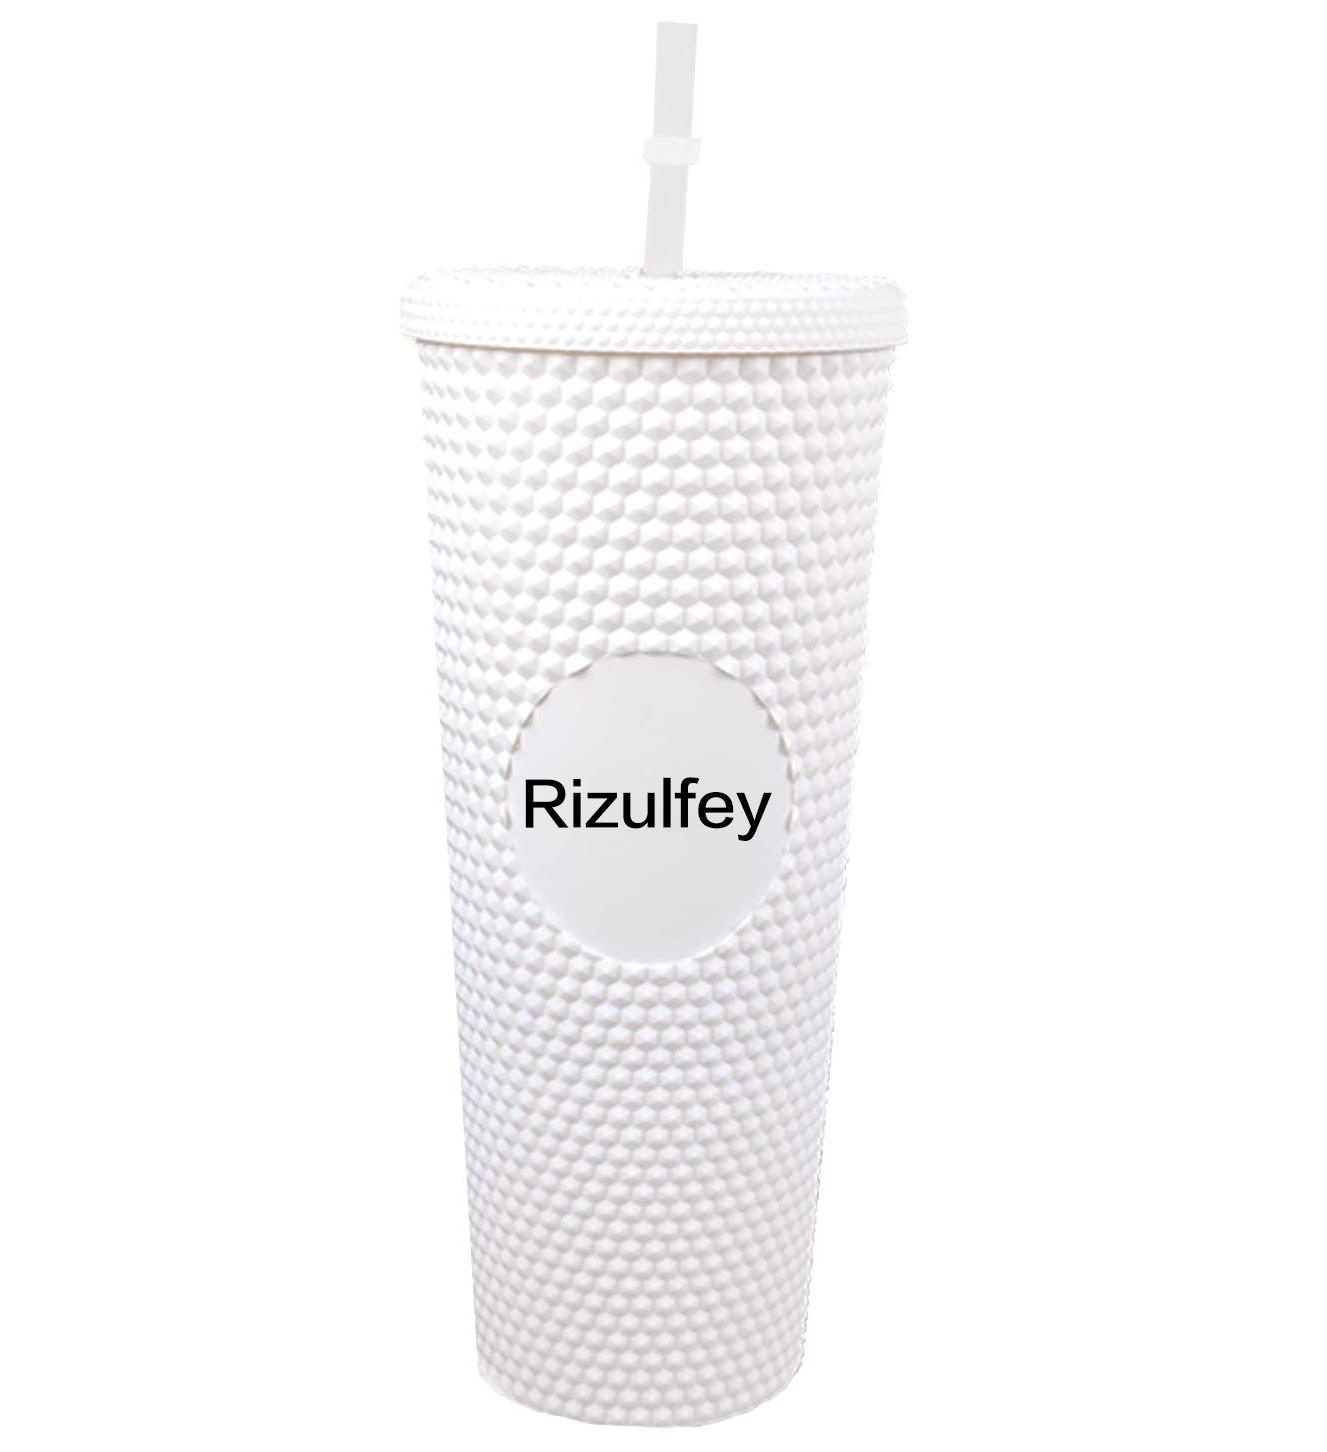 https://www.rizulfey.com/wp-content/uploads/2014/08/16oz-C-Water-Tumblerwhite%E6%97%A0%E7%9B%92Rizulfey.jpg